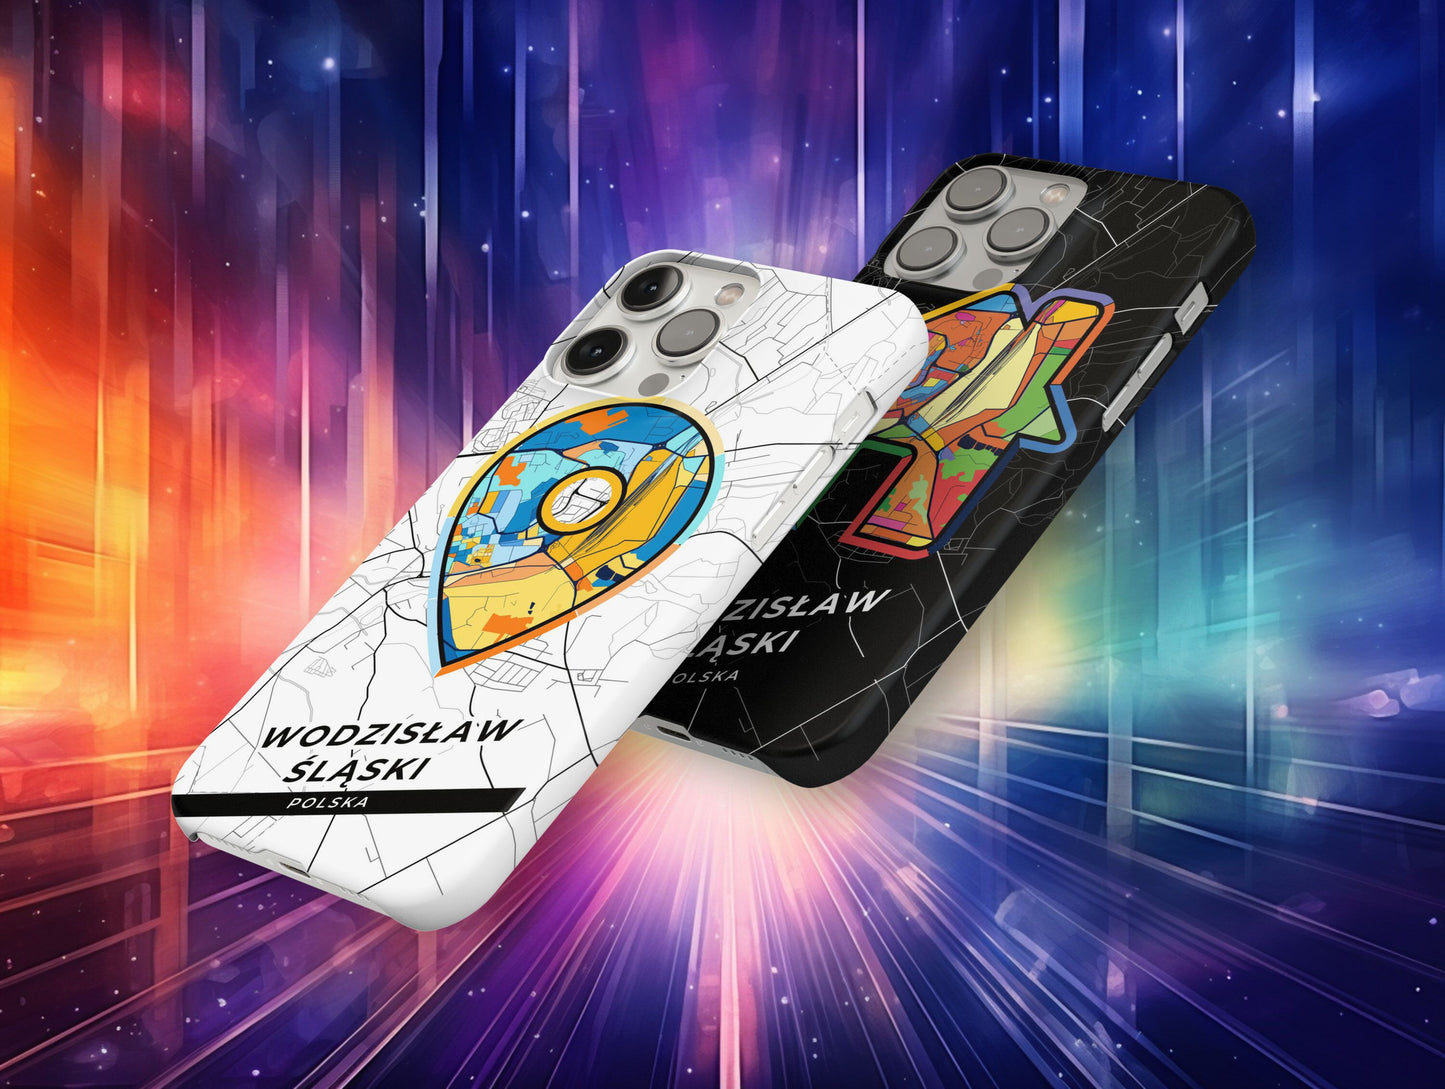 Wodzisław Śląski Poland slim phone case with colorful icon